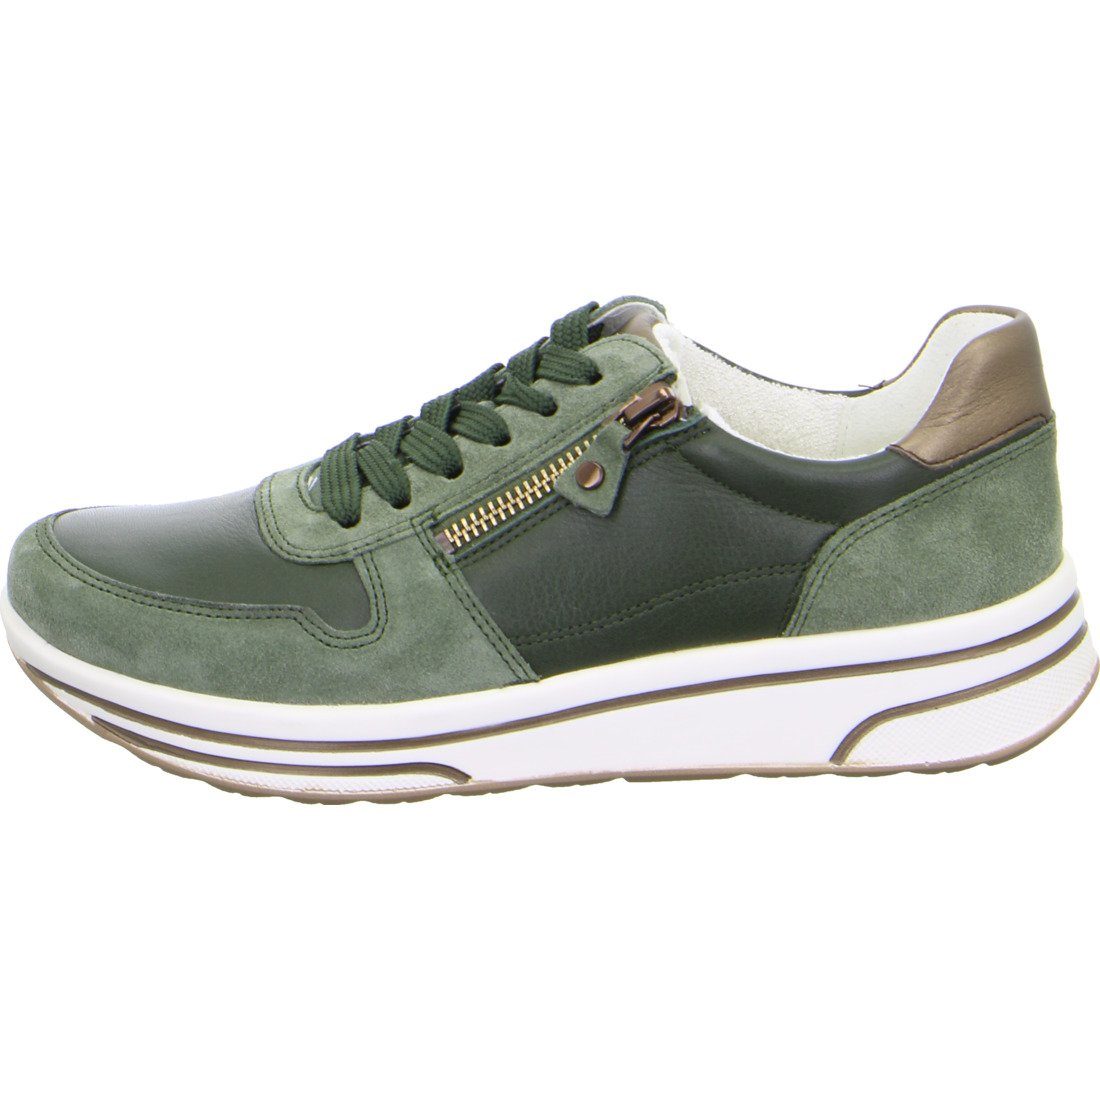 Sneaker Sapporo Ara - 049788 Glattleder Schuhe, Damen Sneaker grün Ara